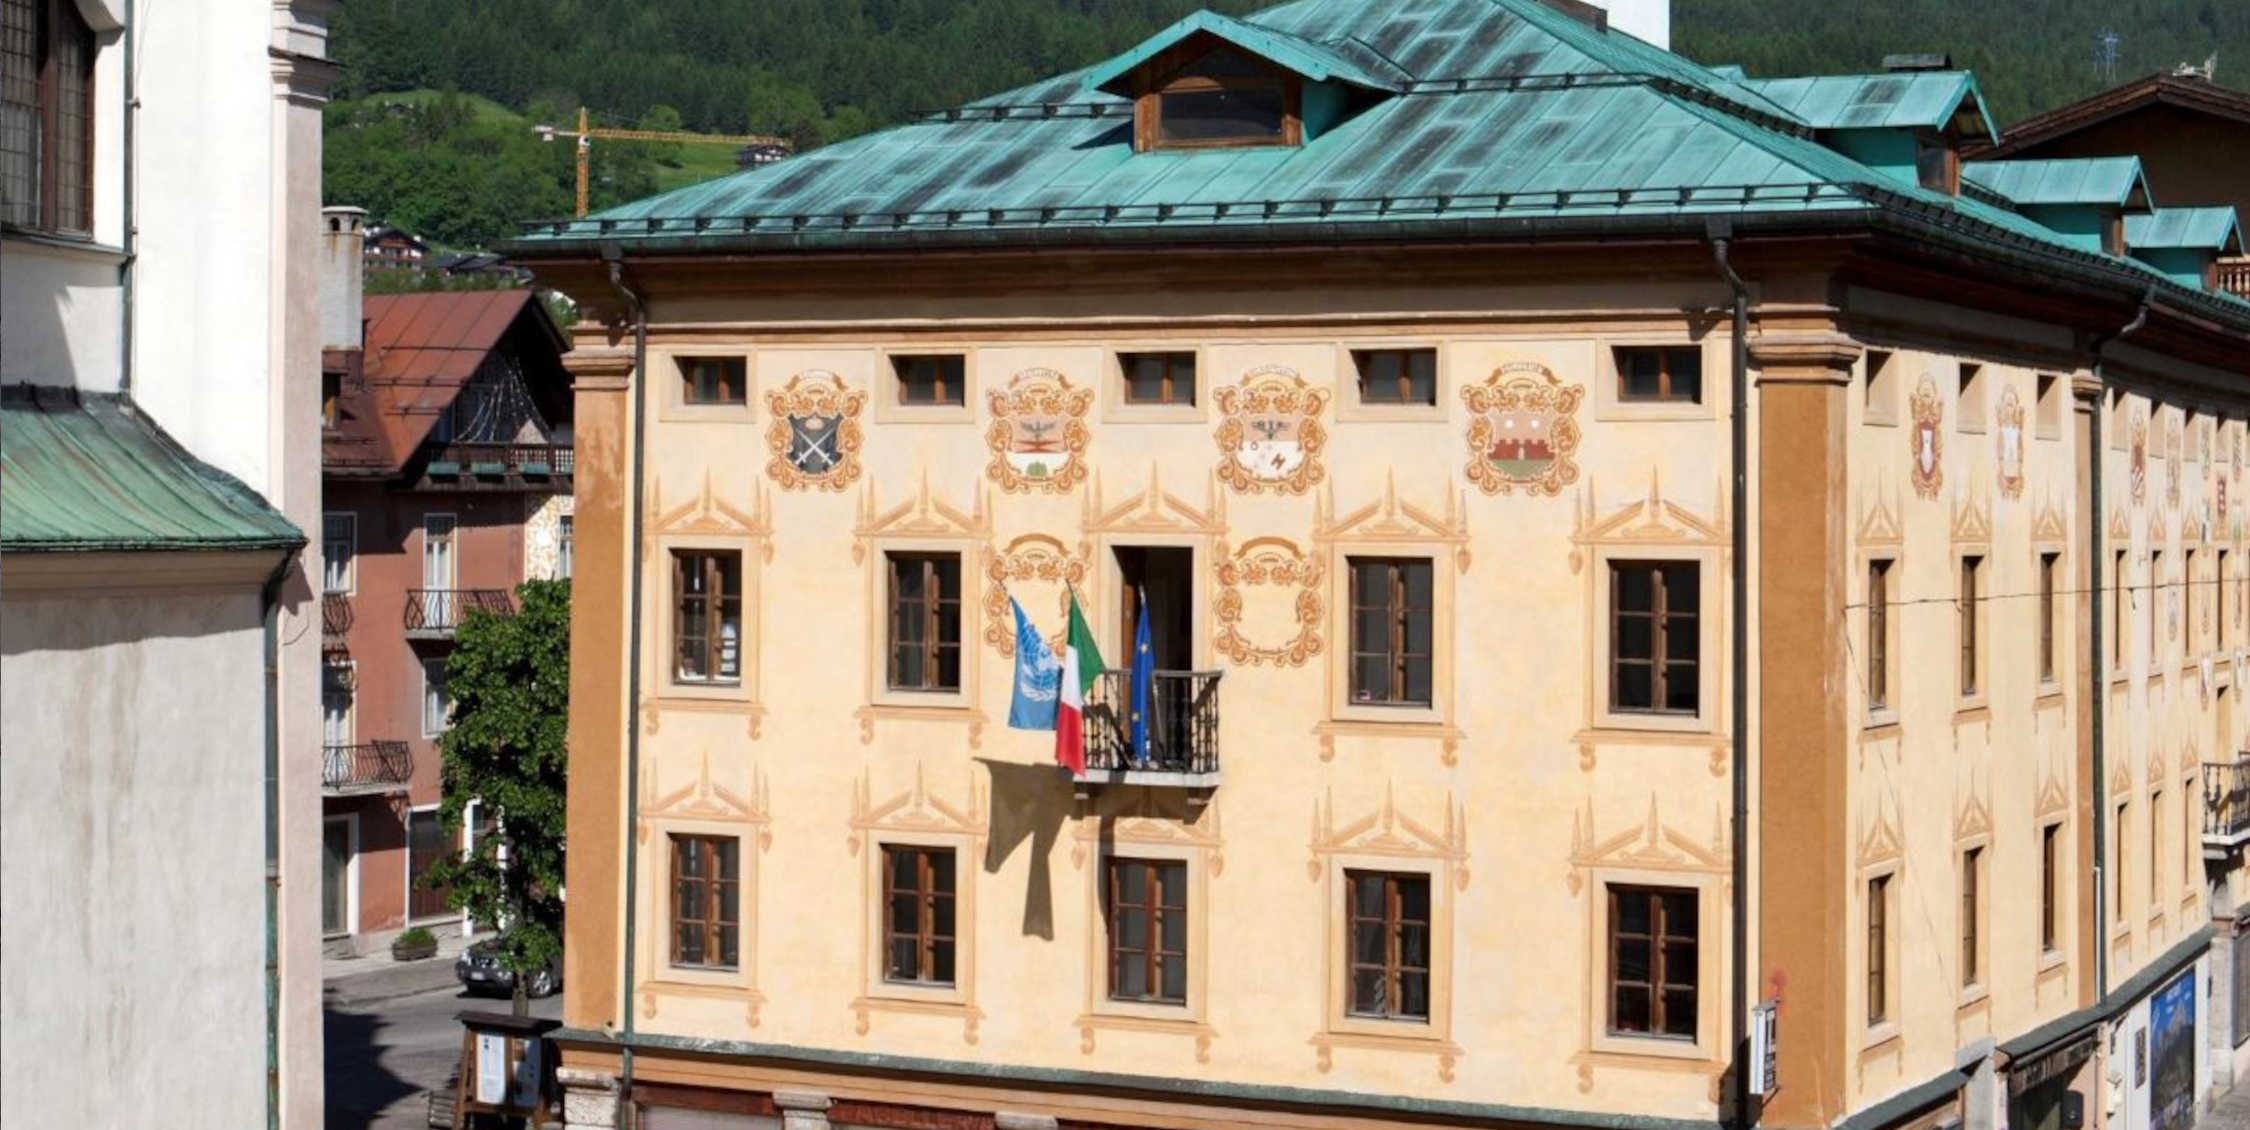 La sede della Fondazione Dolomiti UNESCO a Cortina d'Ampezzo